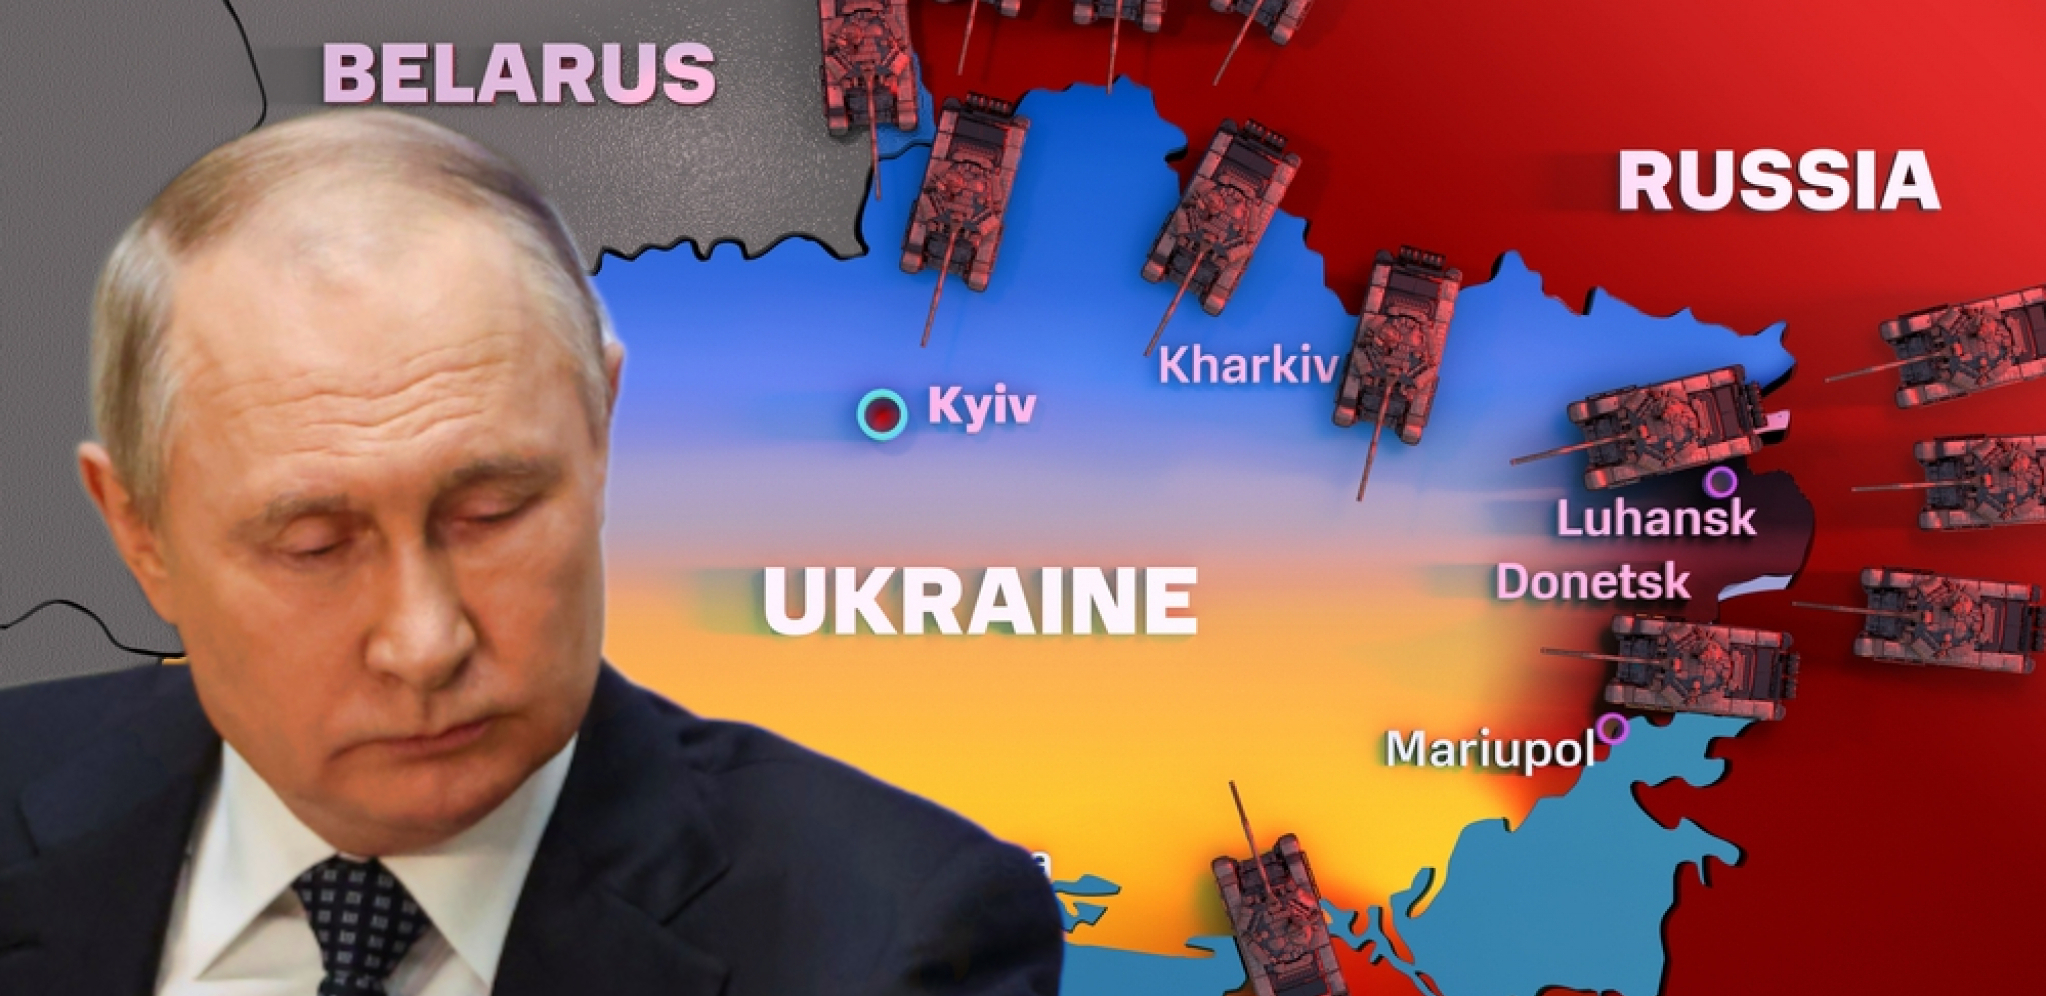 UKRSTILI KOPLJA OKO UKRAJINE, TENZIJA JE OGROMNA Procureli detalji jednočasovnog razgovora Putina i Šolca